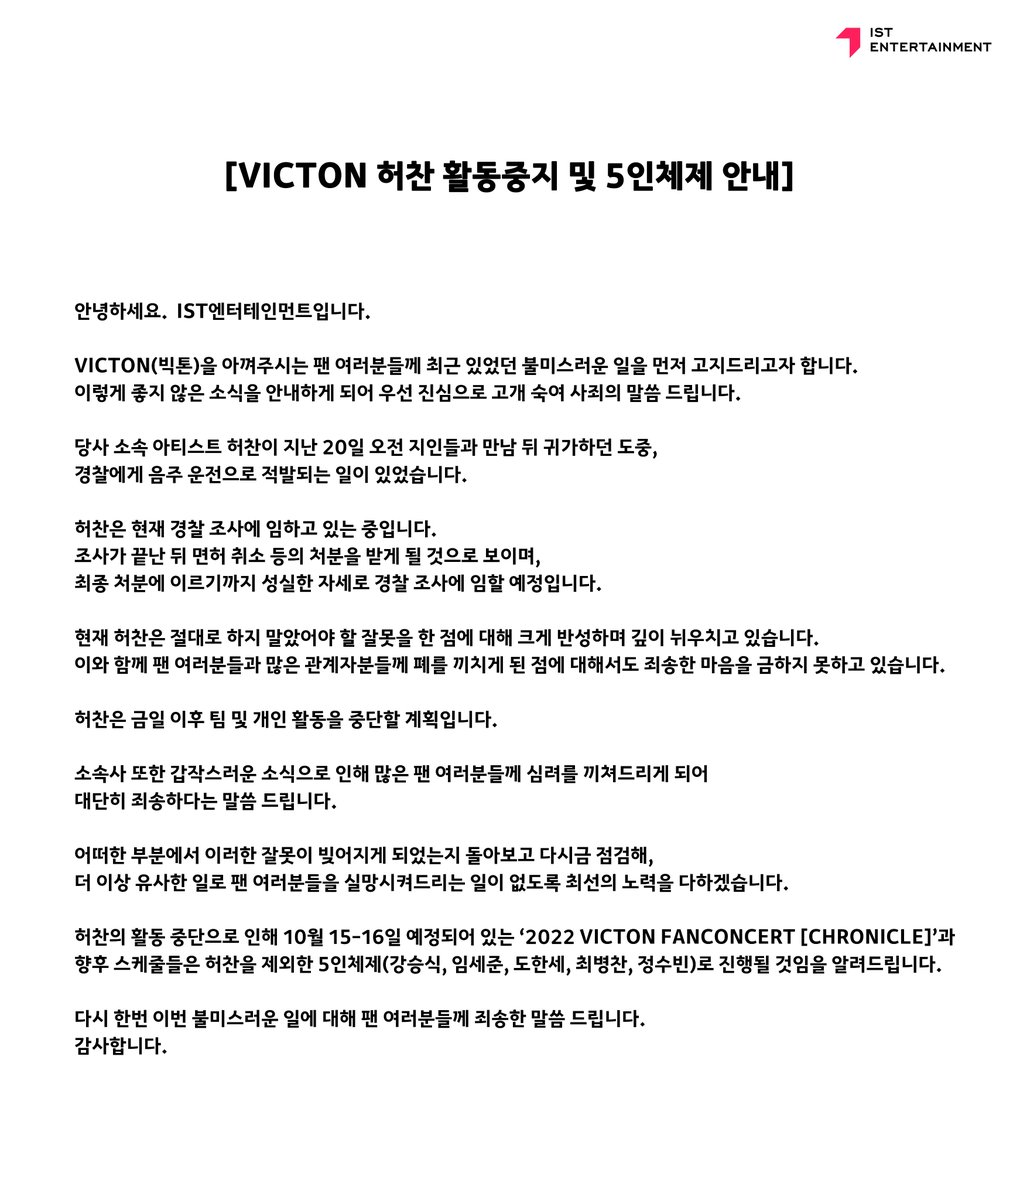 [#빅톤]
<VICTON 허찬 활동중지 및 5인체제 안내>

#VICTON